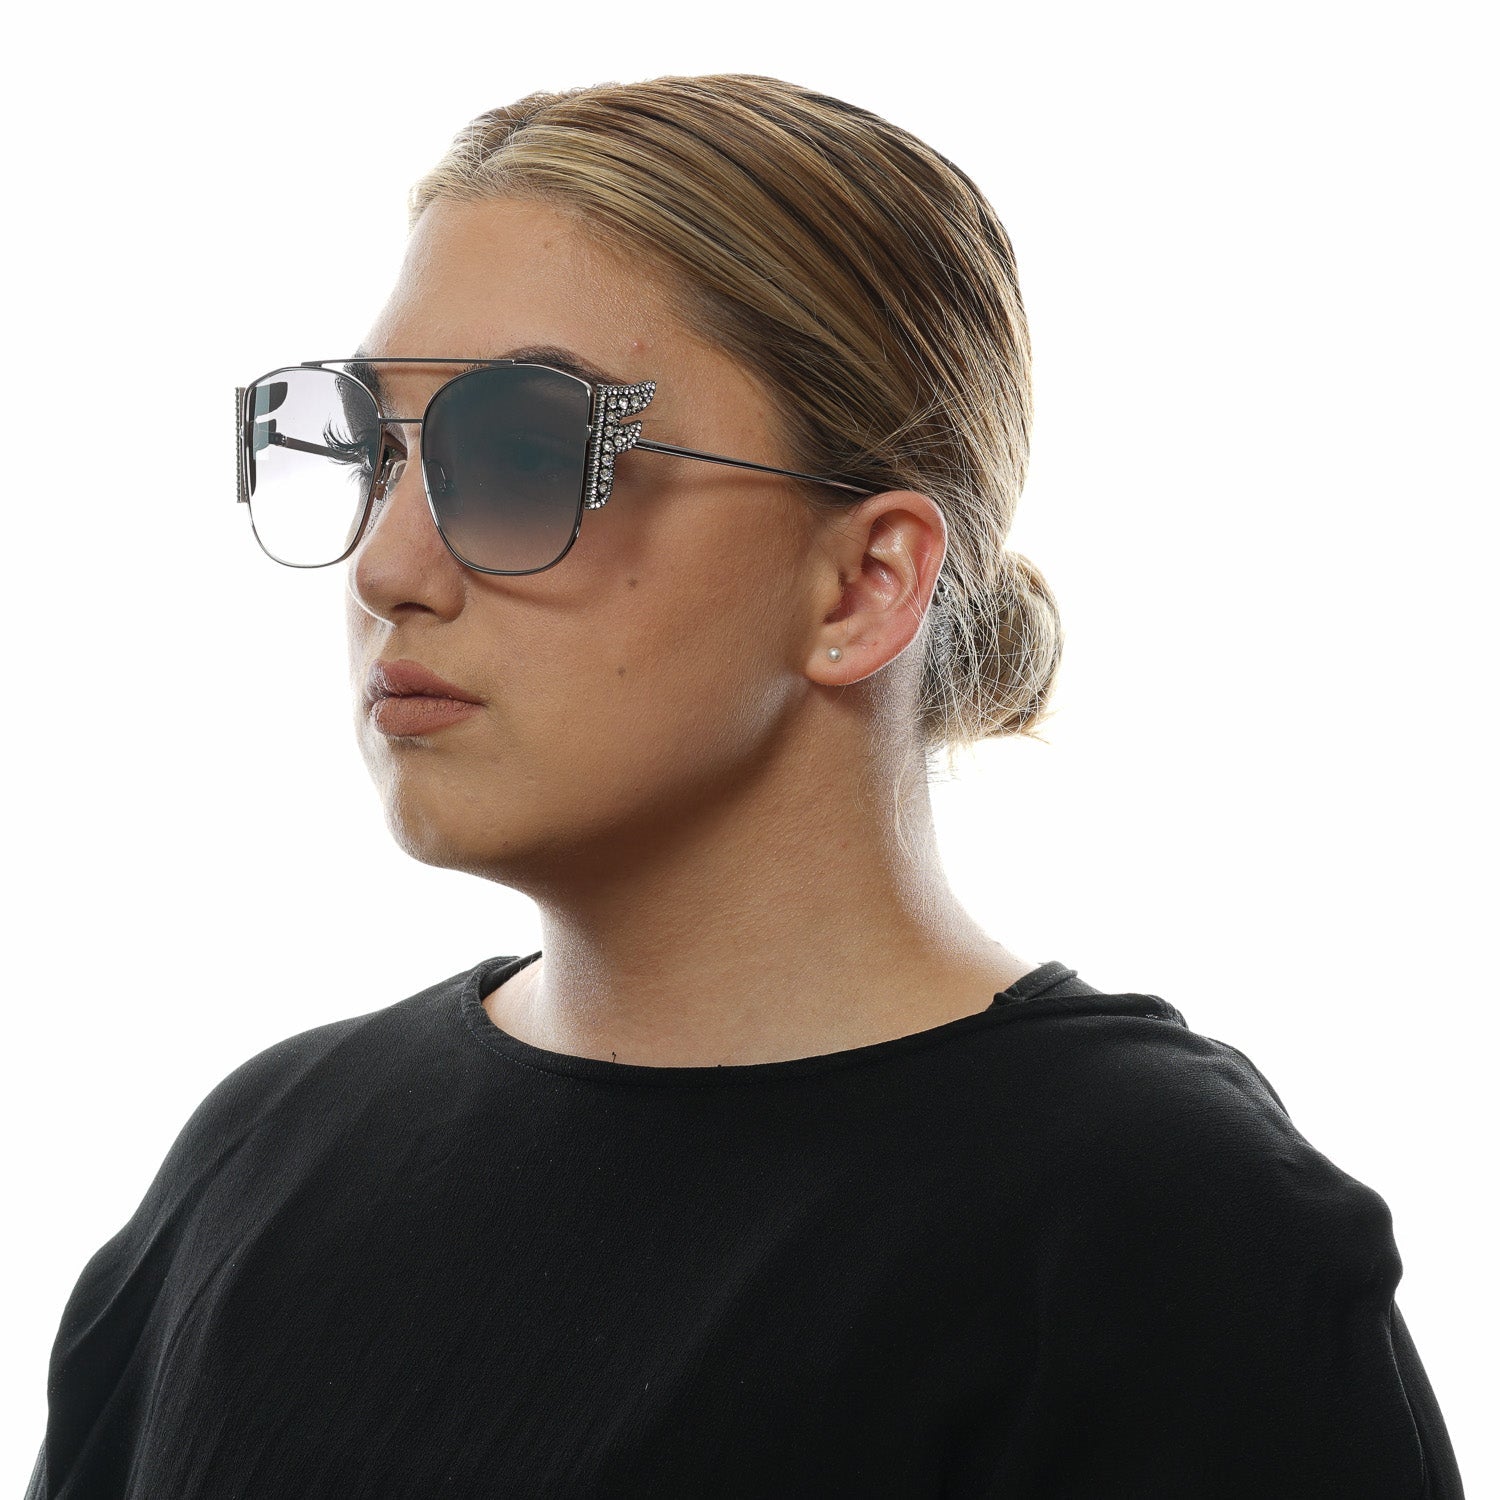 Designer Sunglasses Online